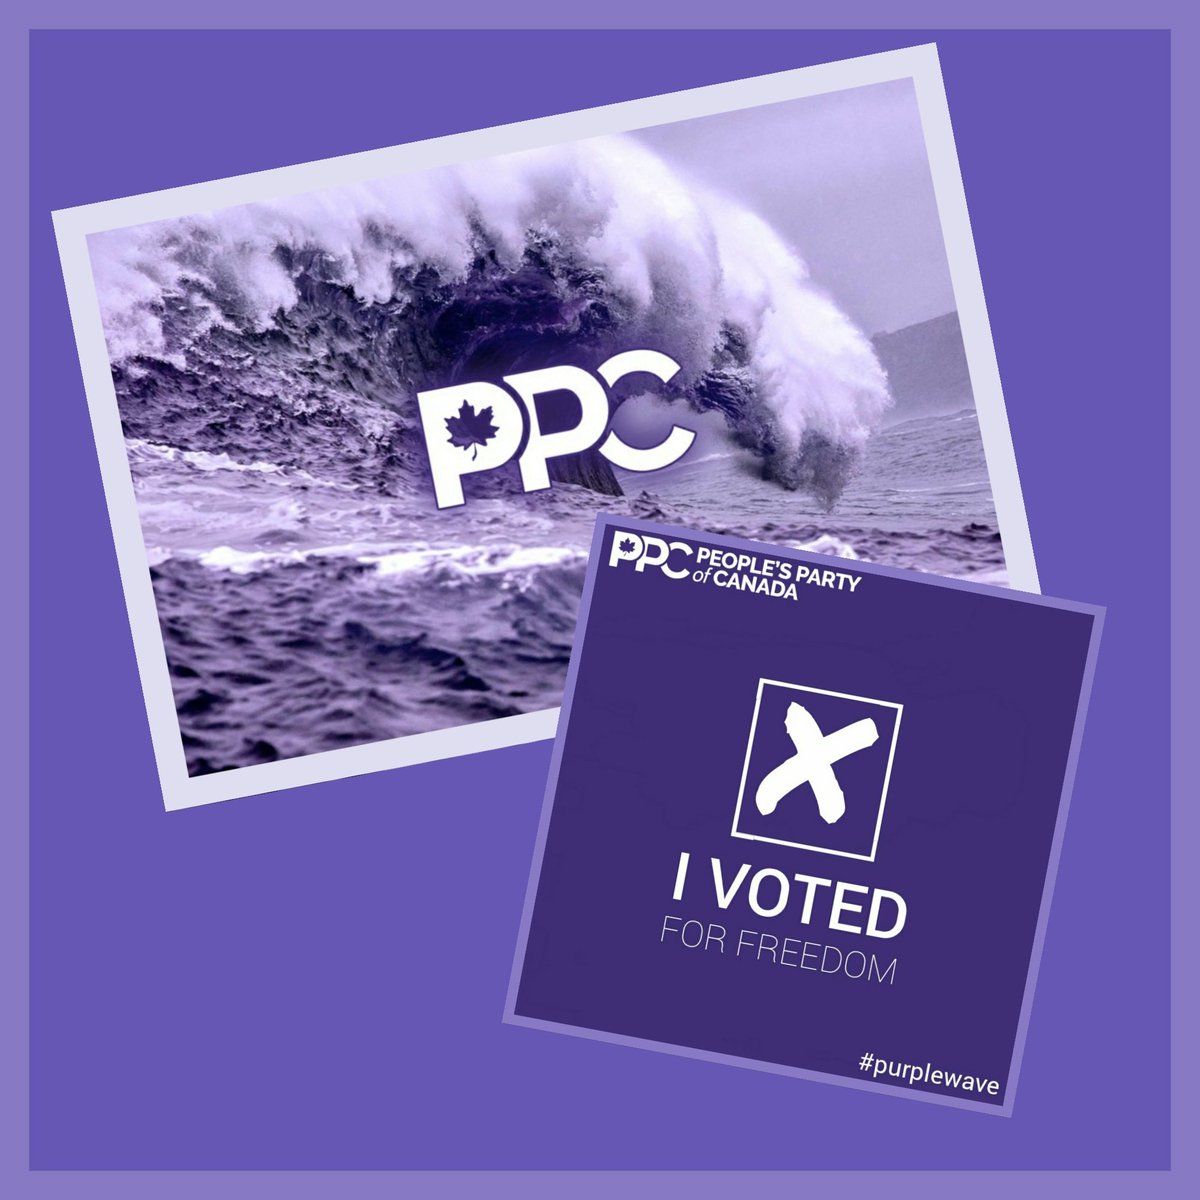 #PurpleWave #VotePPC #PPC #VoteFreedom @MaximeBernier